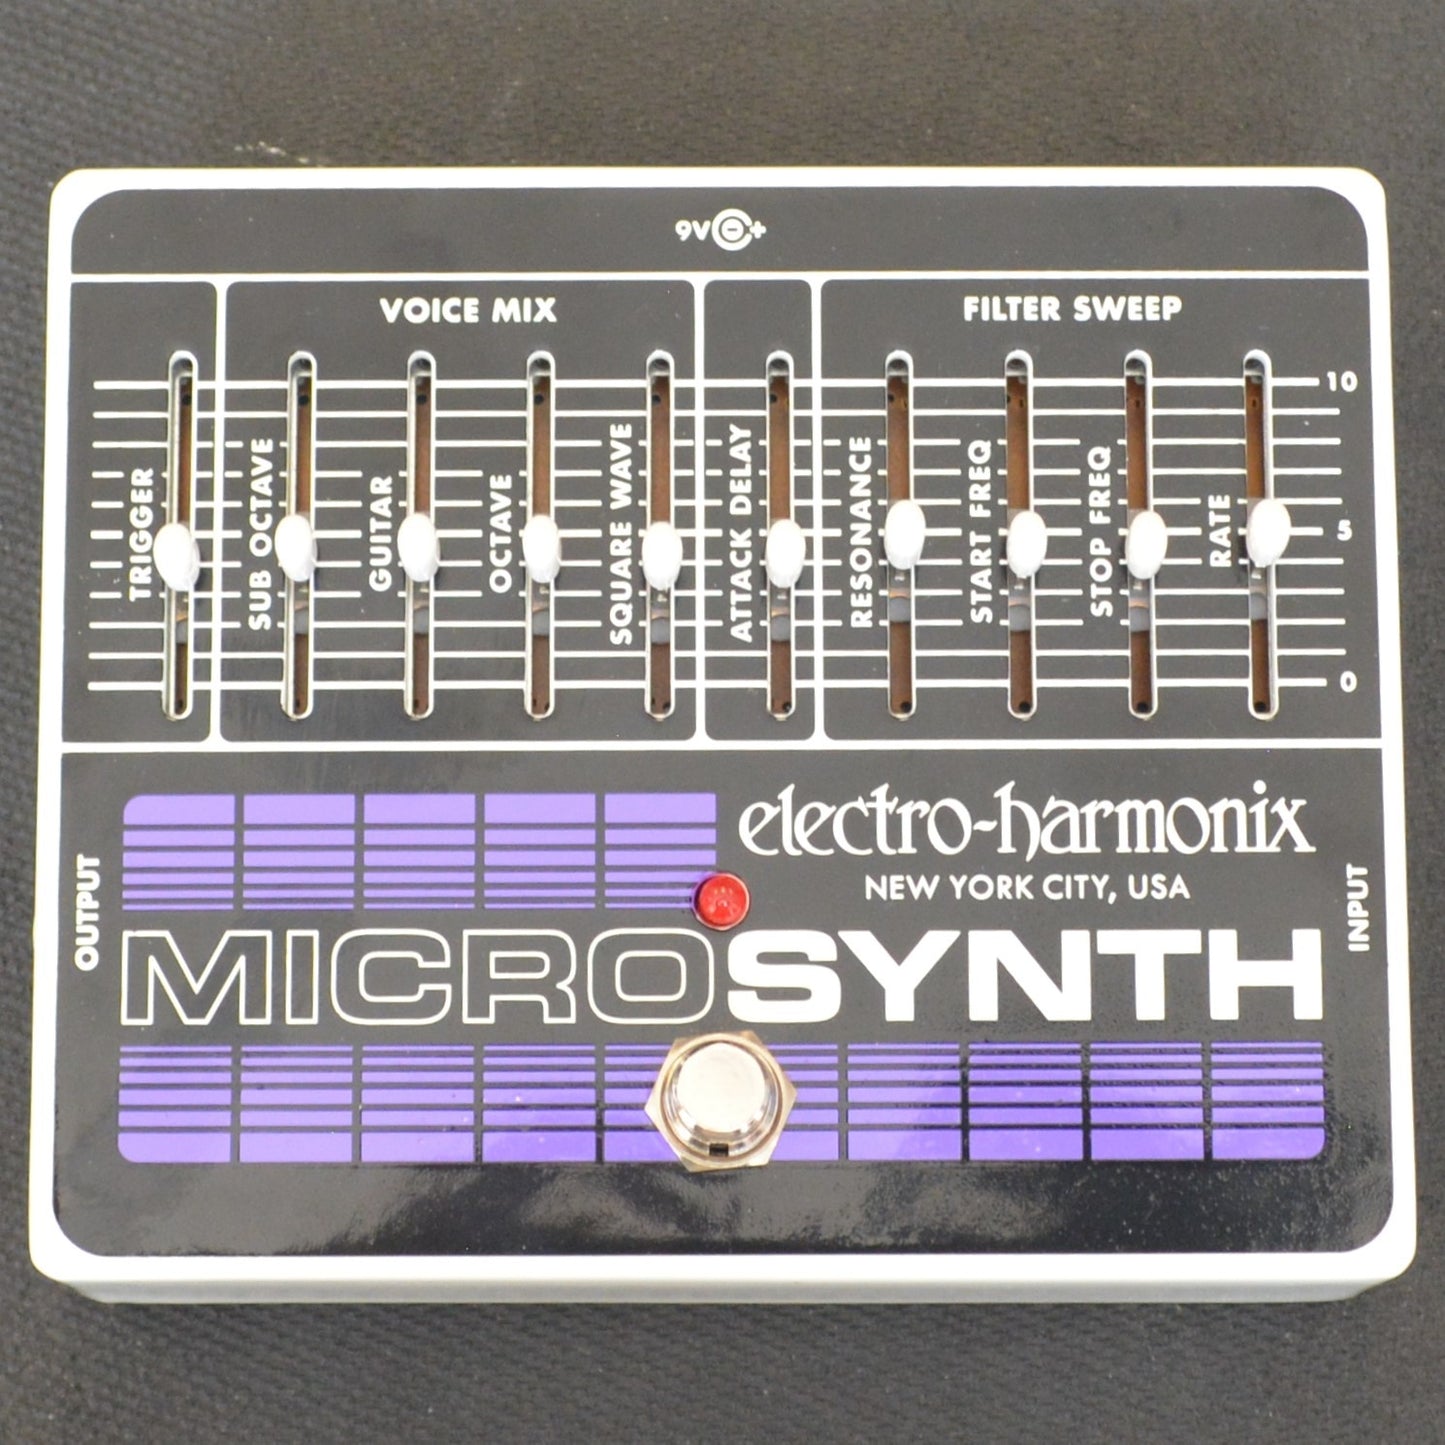 Electro-Harmonix Microsynth